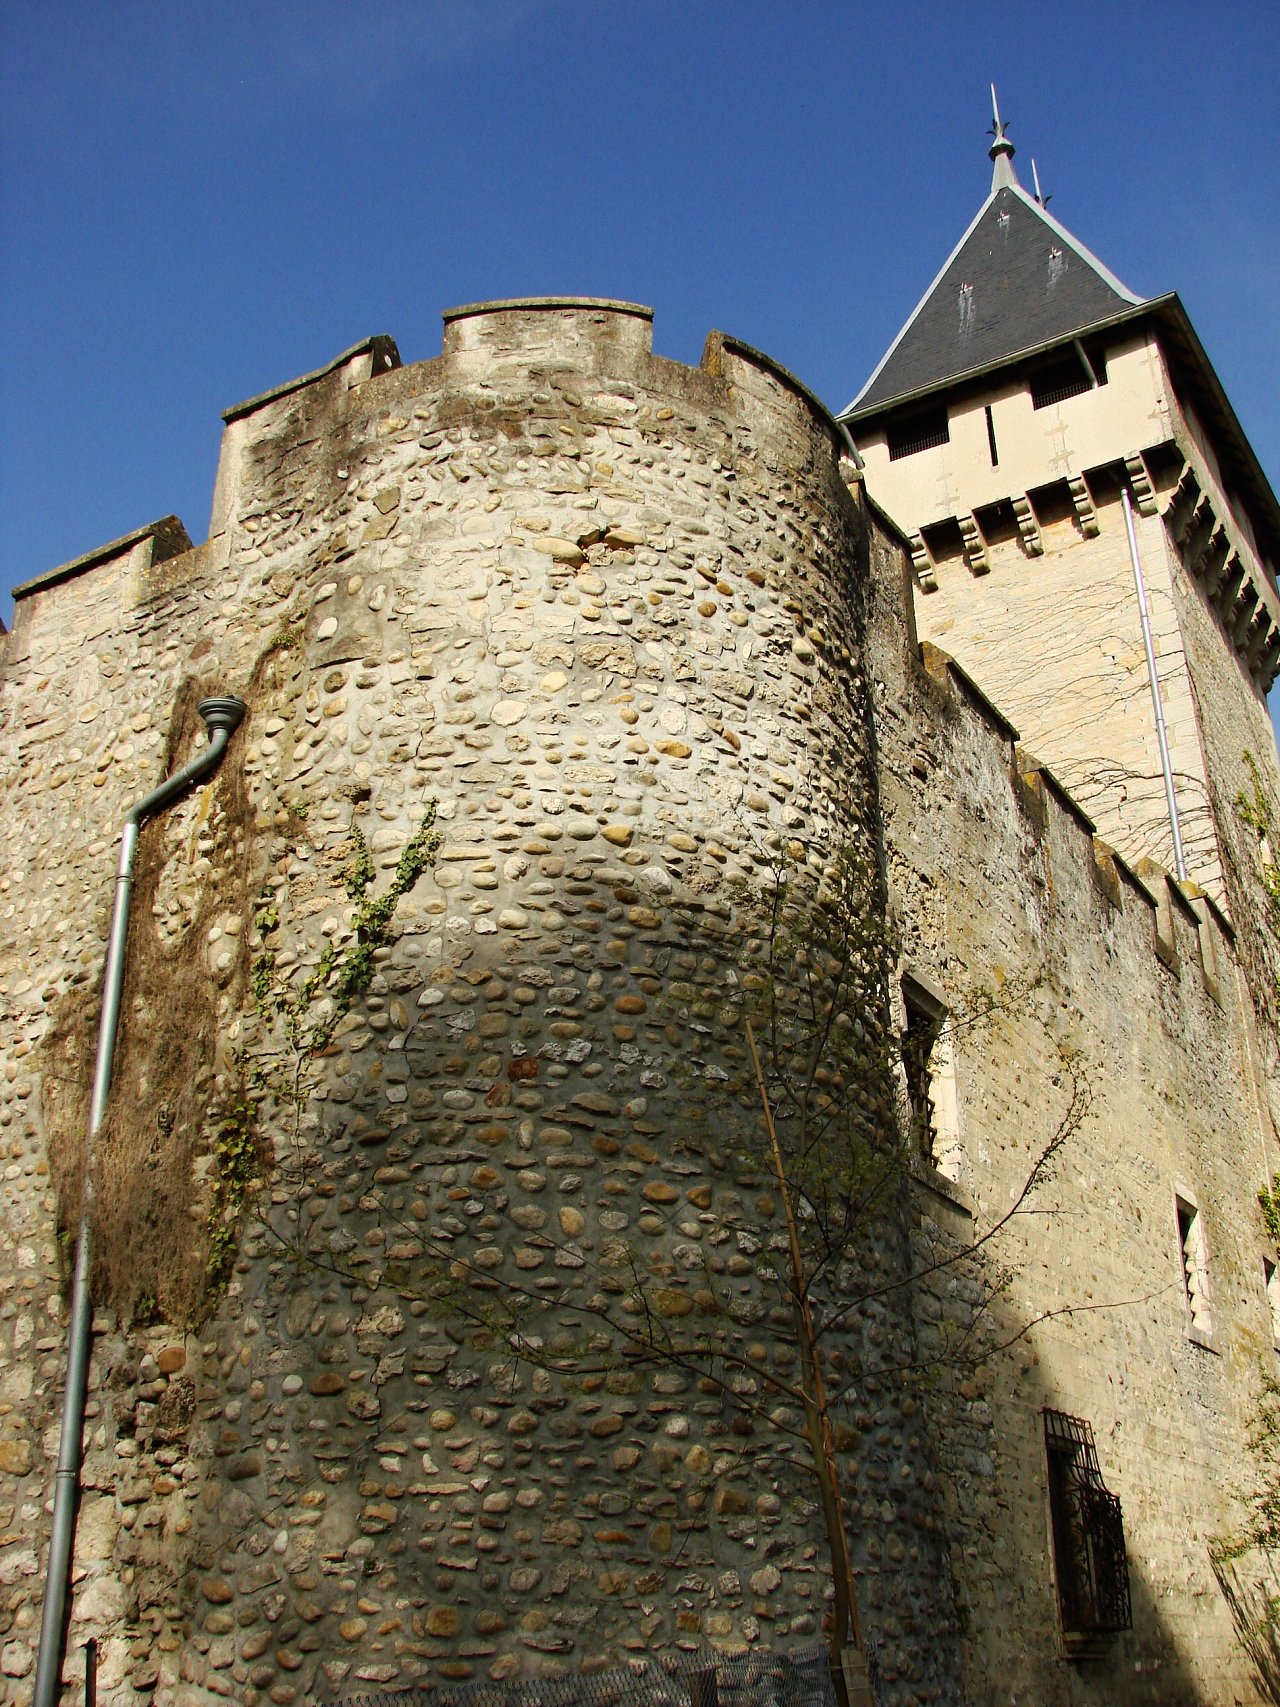 Castle of Chazey-sur-Ain, Pérouges, France